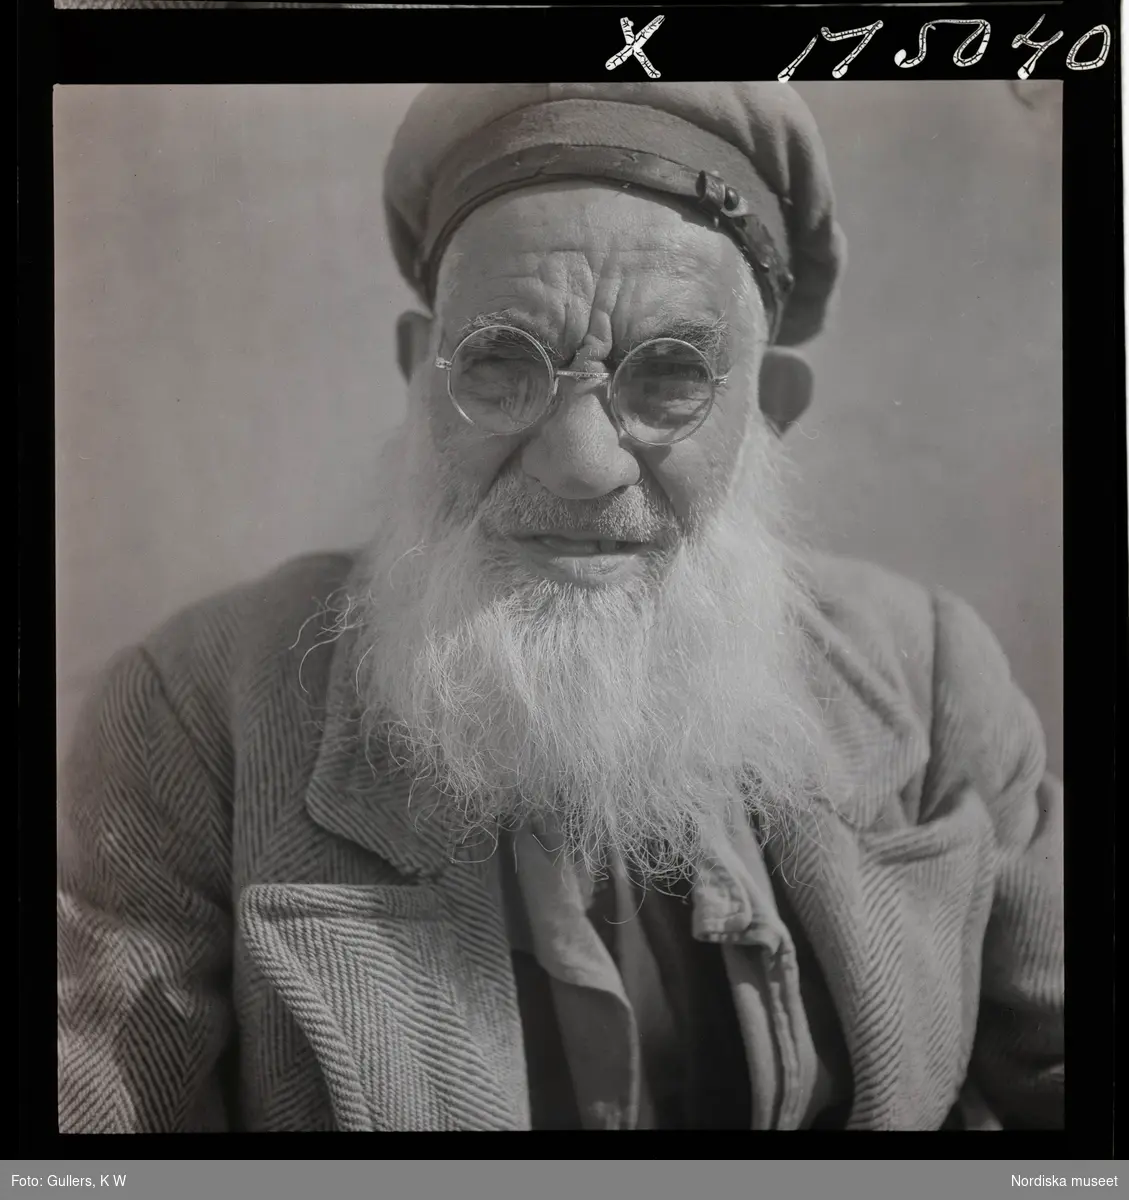 1717/L Istanbul allmänt. Porträtt av en äldre man i runda glasögon.